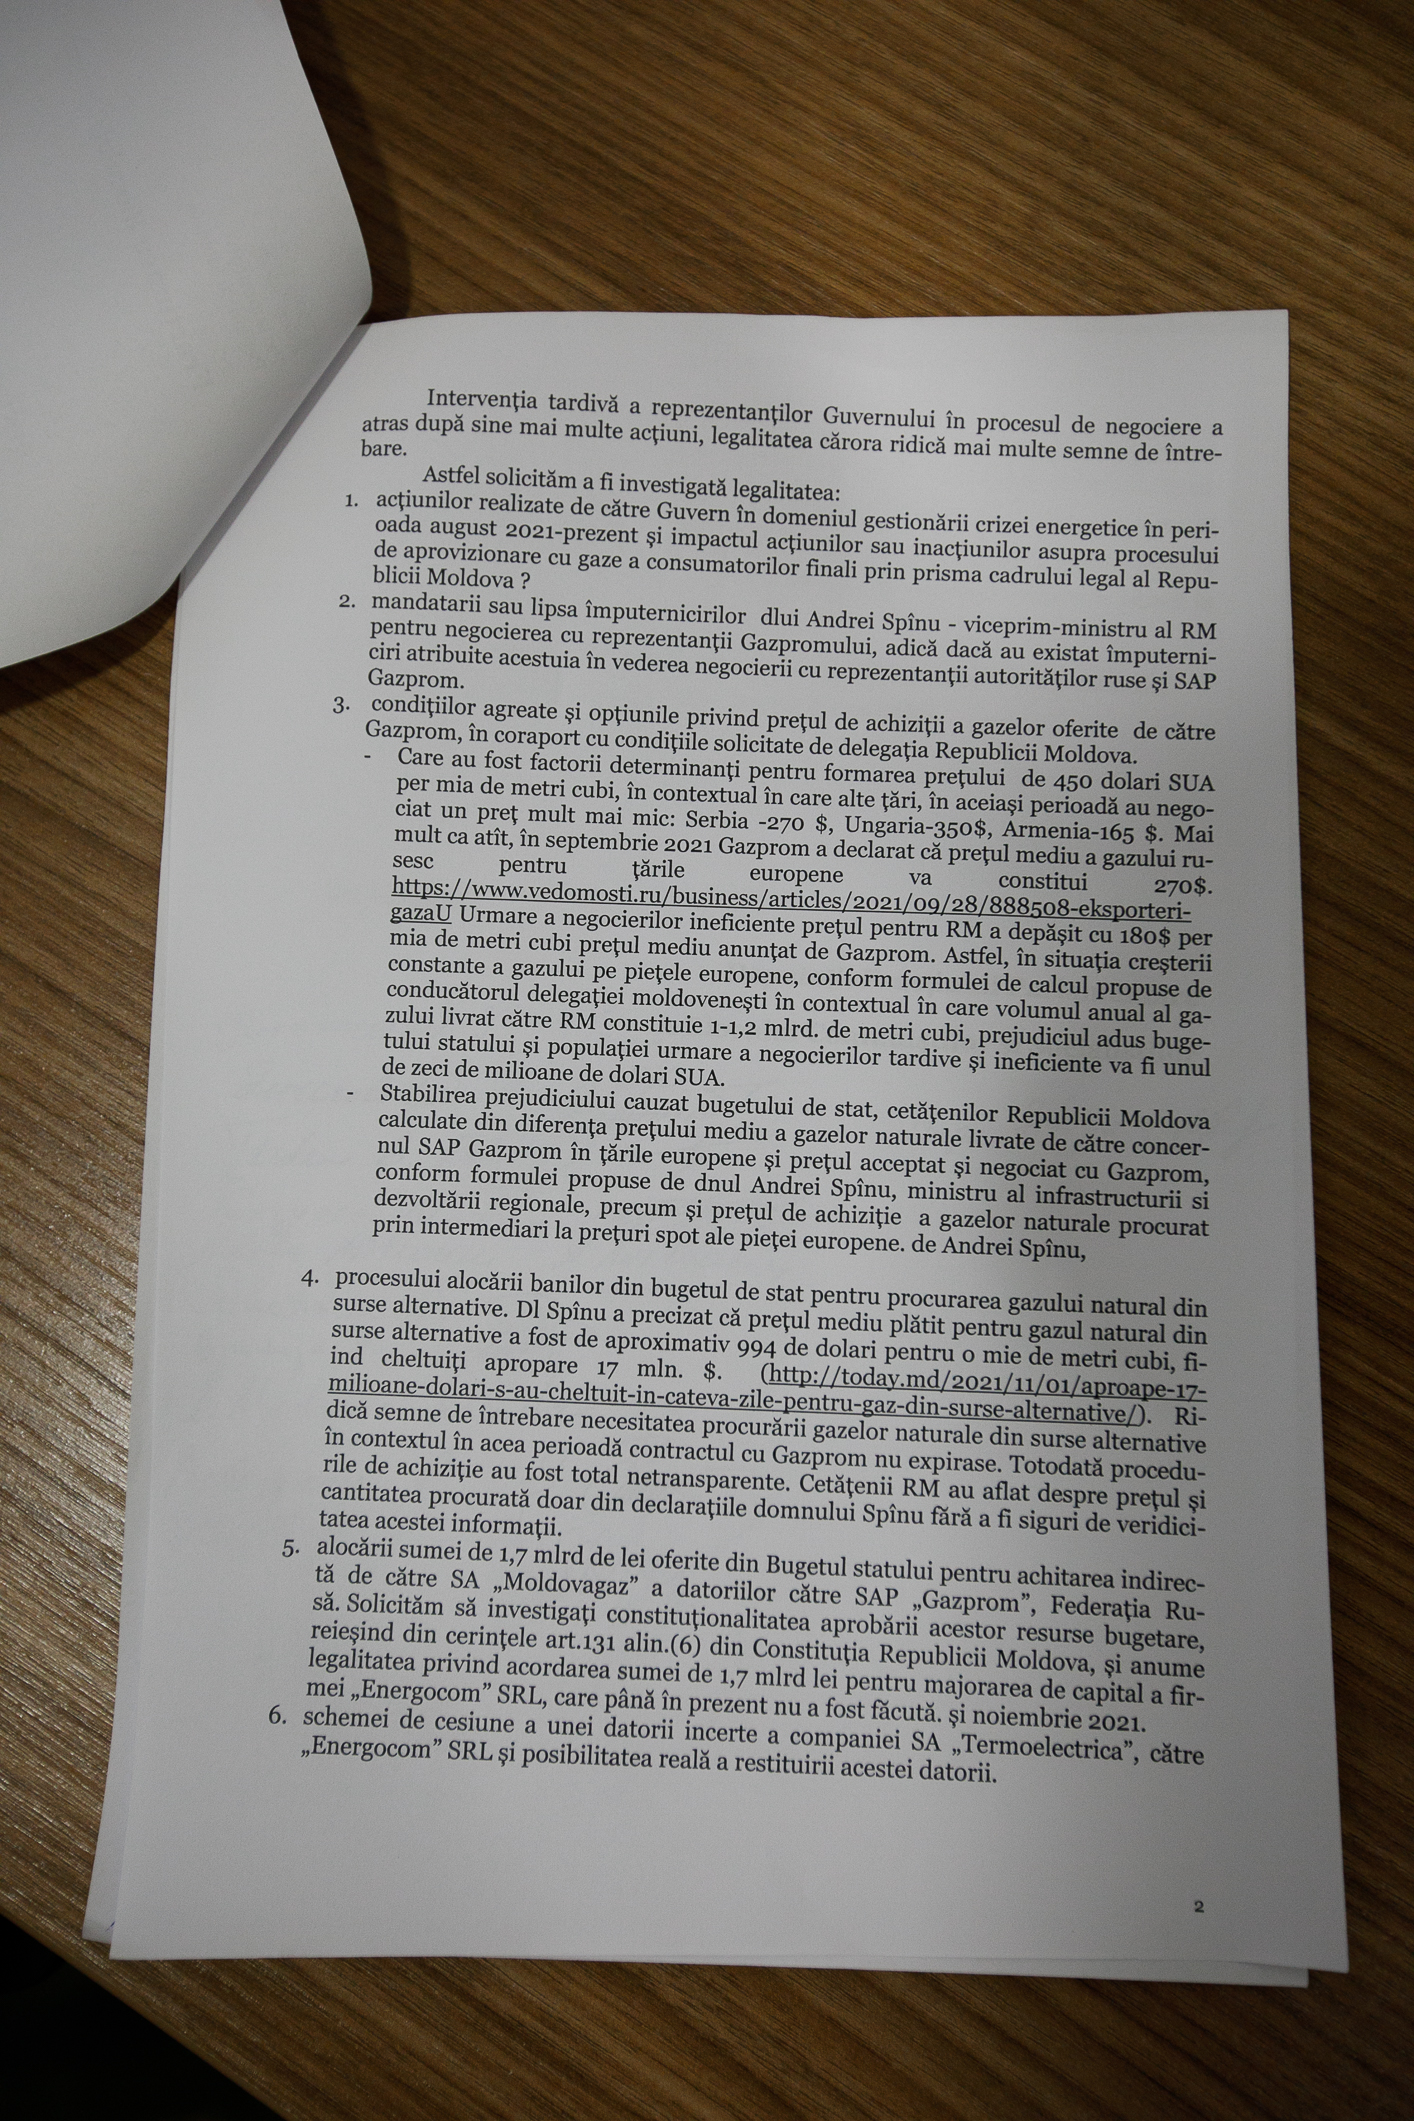 ПСРМ-ПКРМ пожаловались на Спыну в прокуратуру из-за договора с «Газпромом». Министр посоветовал им явиться с повинной